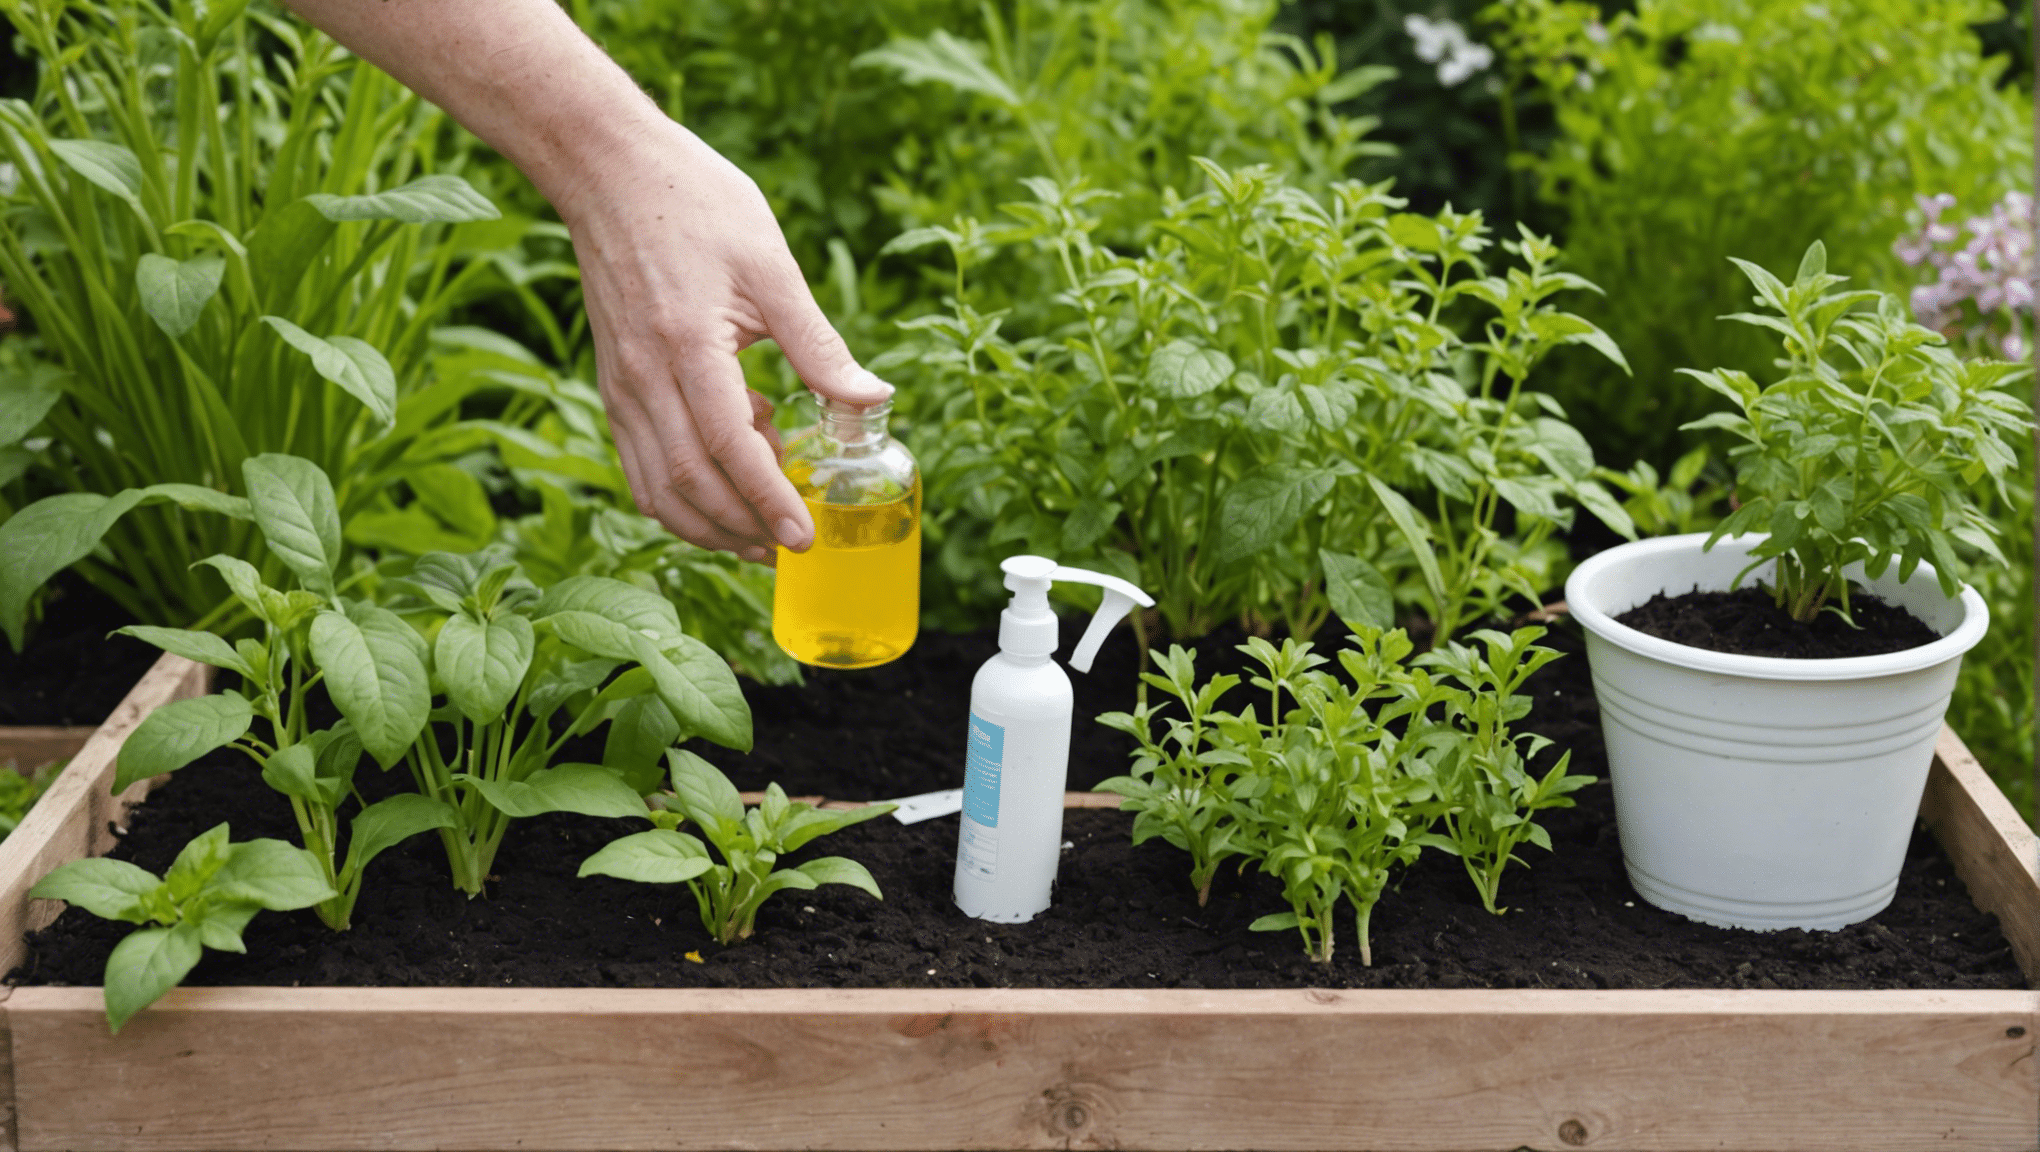 découvrez comment améliorer la santé de votre jardin en utilisant des huiles essentielles : méthodes et bienfaits